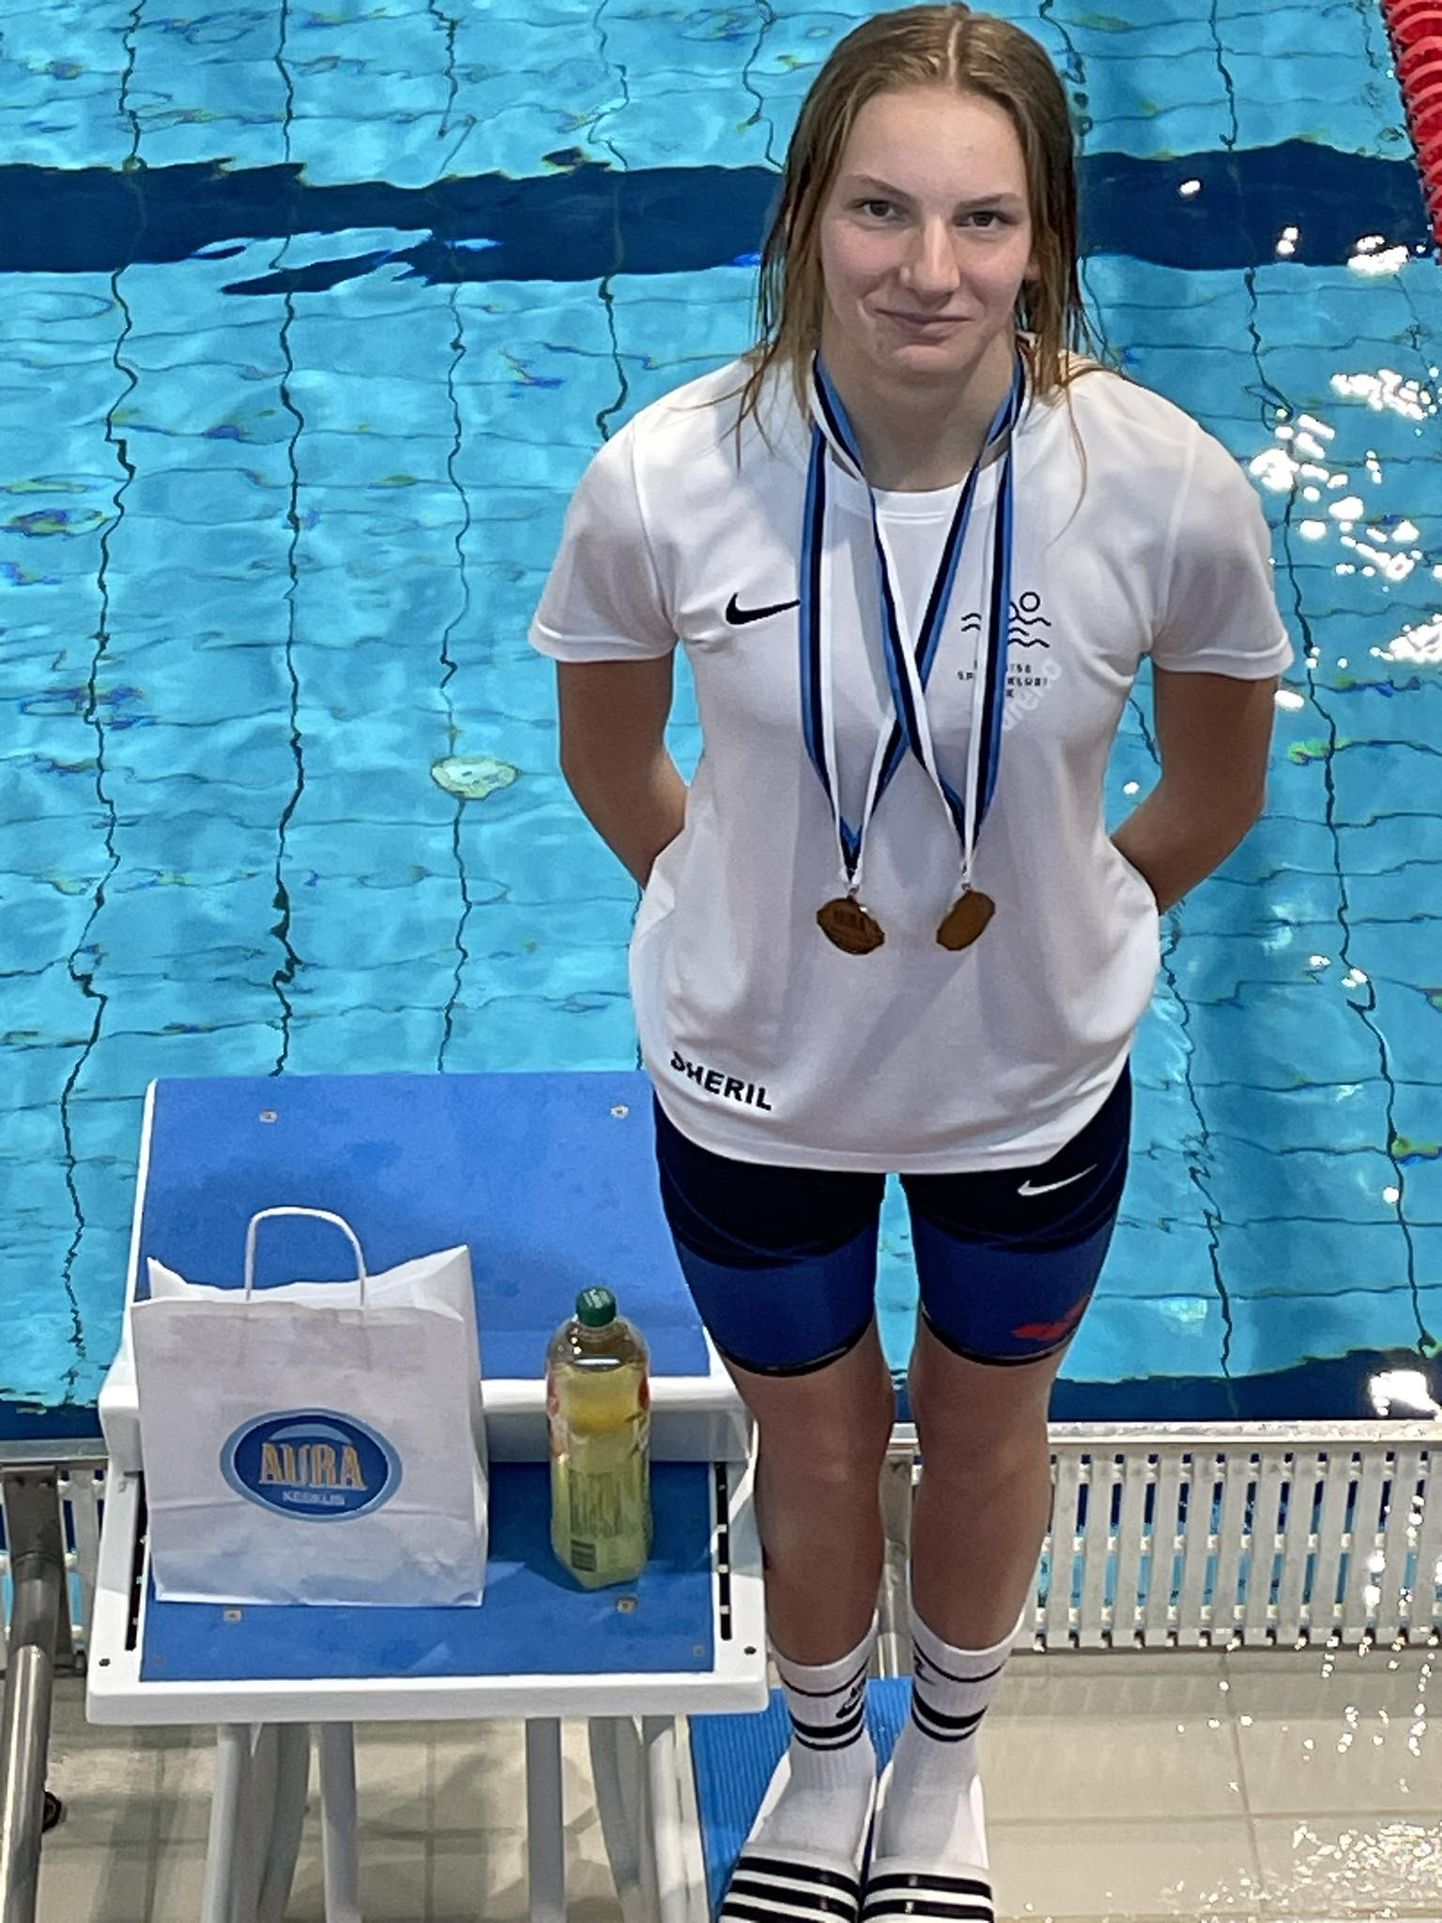 Sheril Tankler uuendas kolme Järvamaa absoluutarvestuse rekordit naiste ujumises.